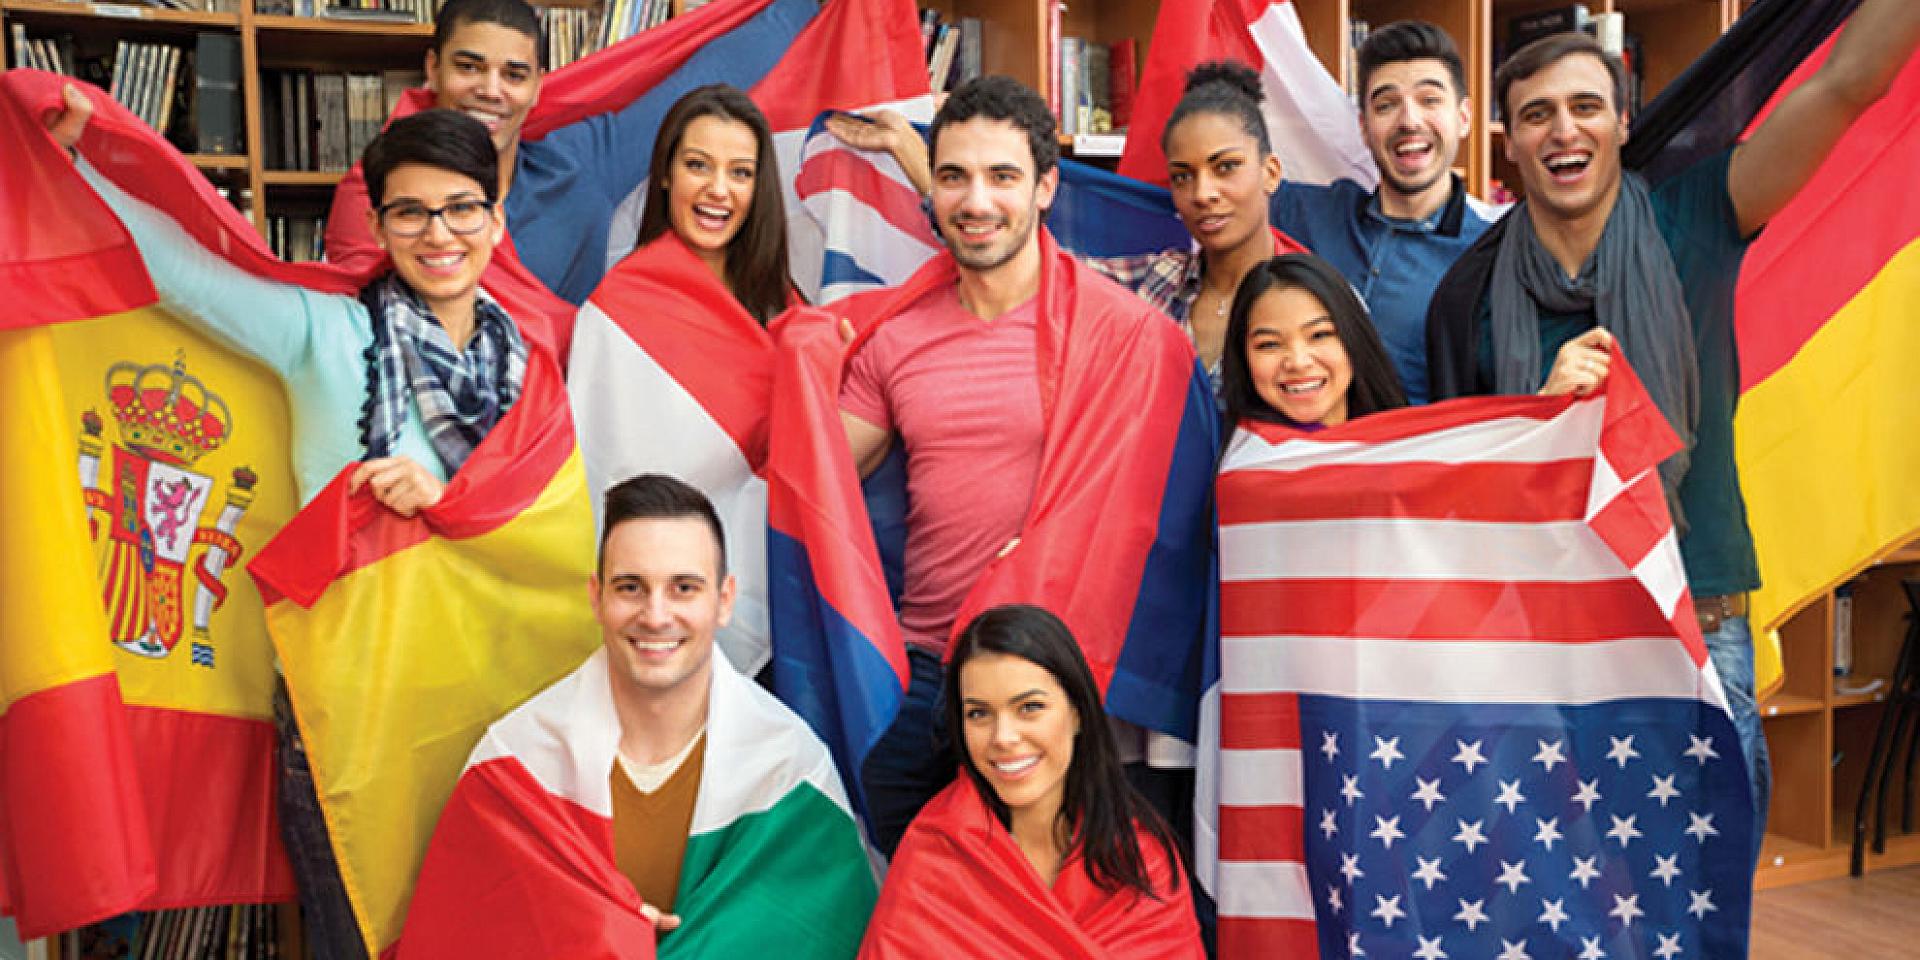 Groupe d'étudiants et d'étudiantes dans la bibliothèque portant des drapeaux de différents pays